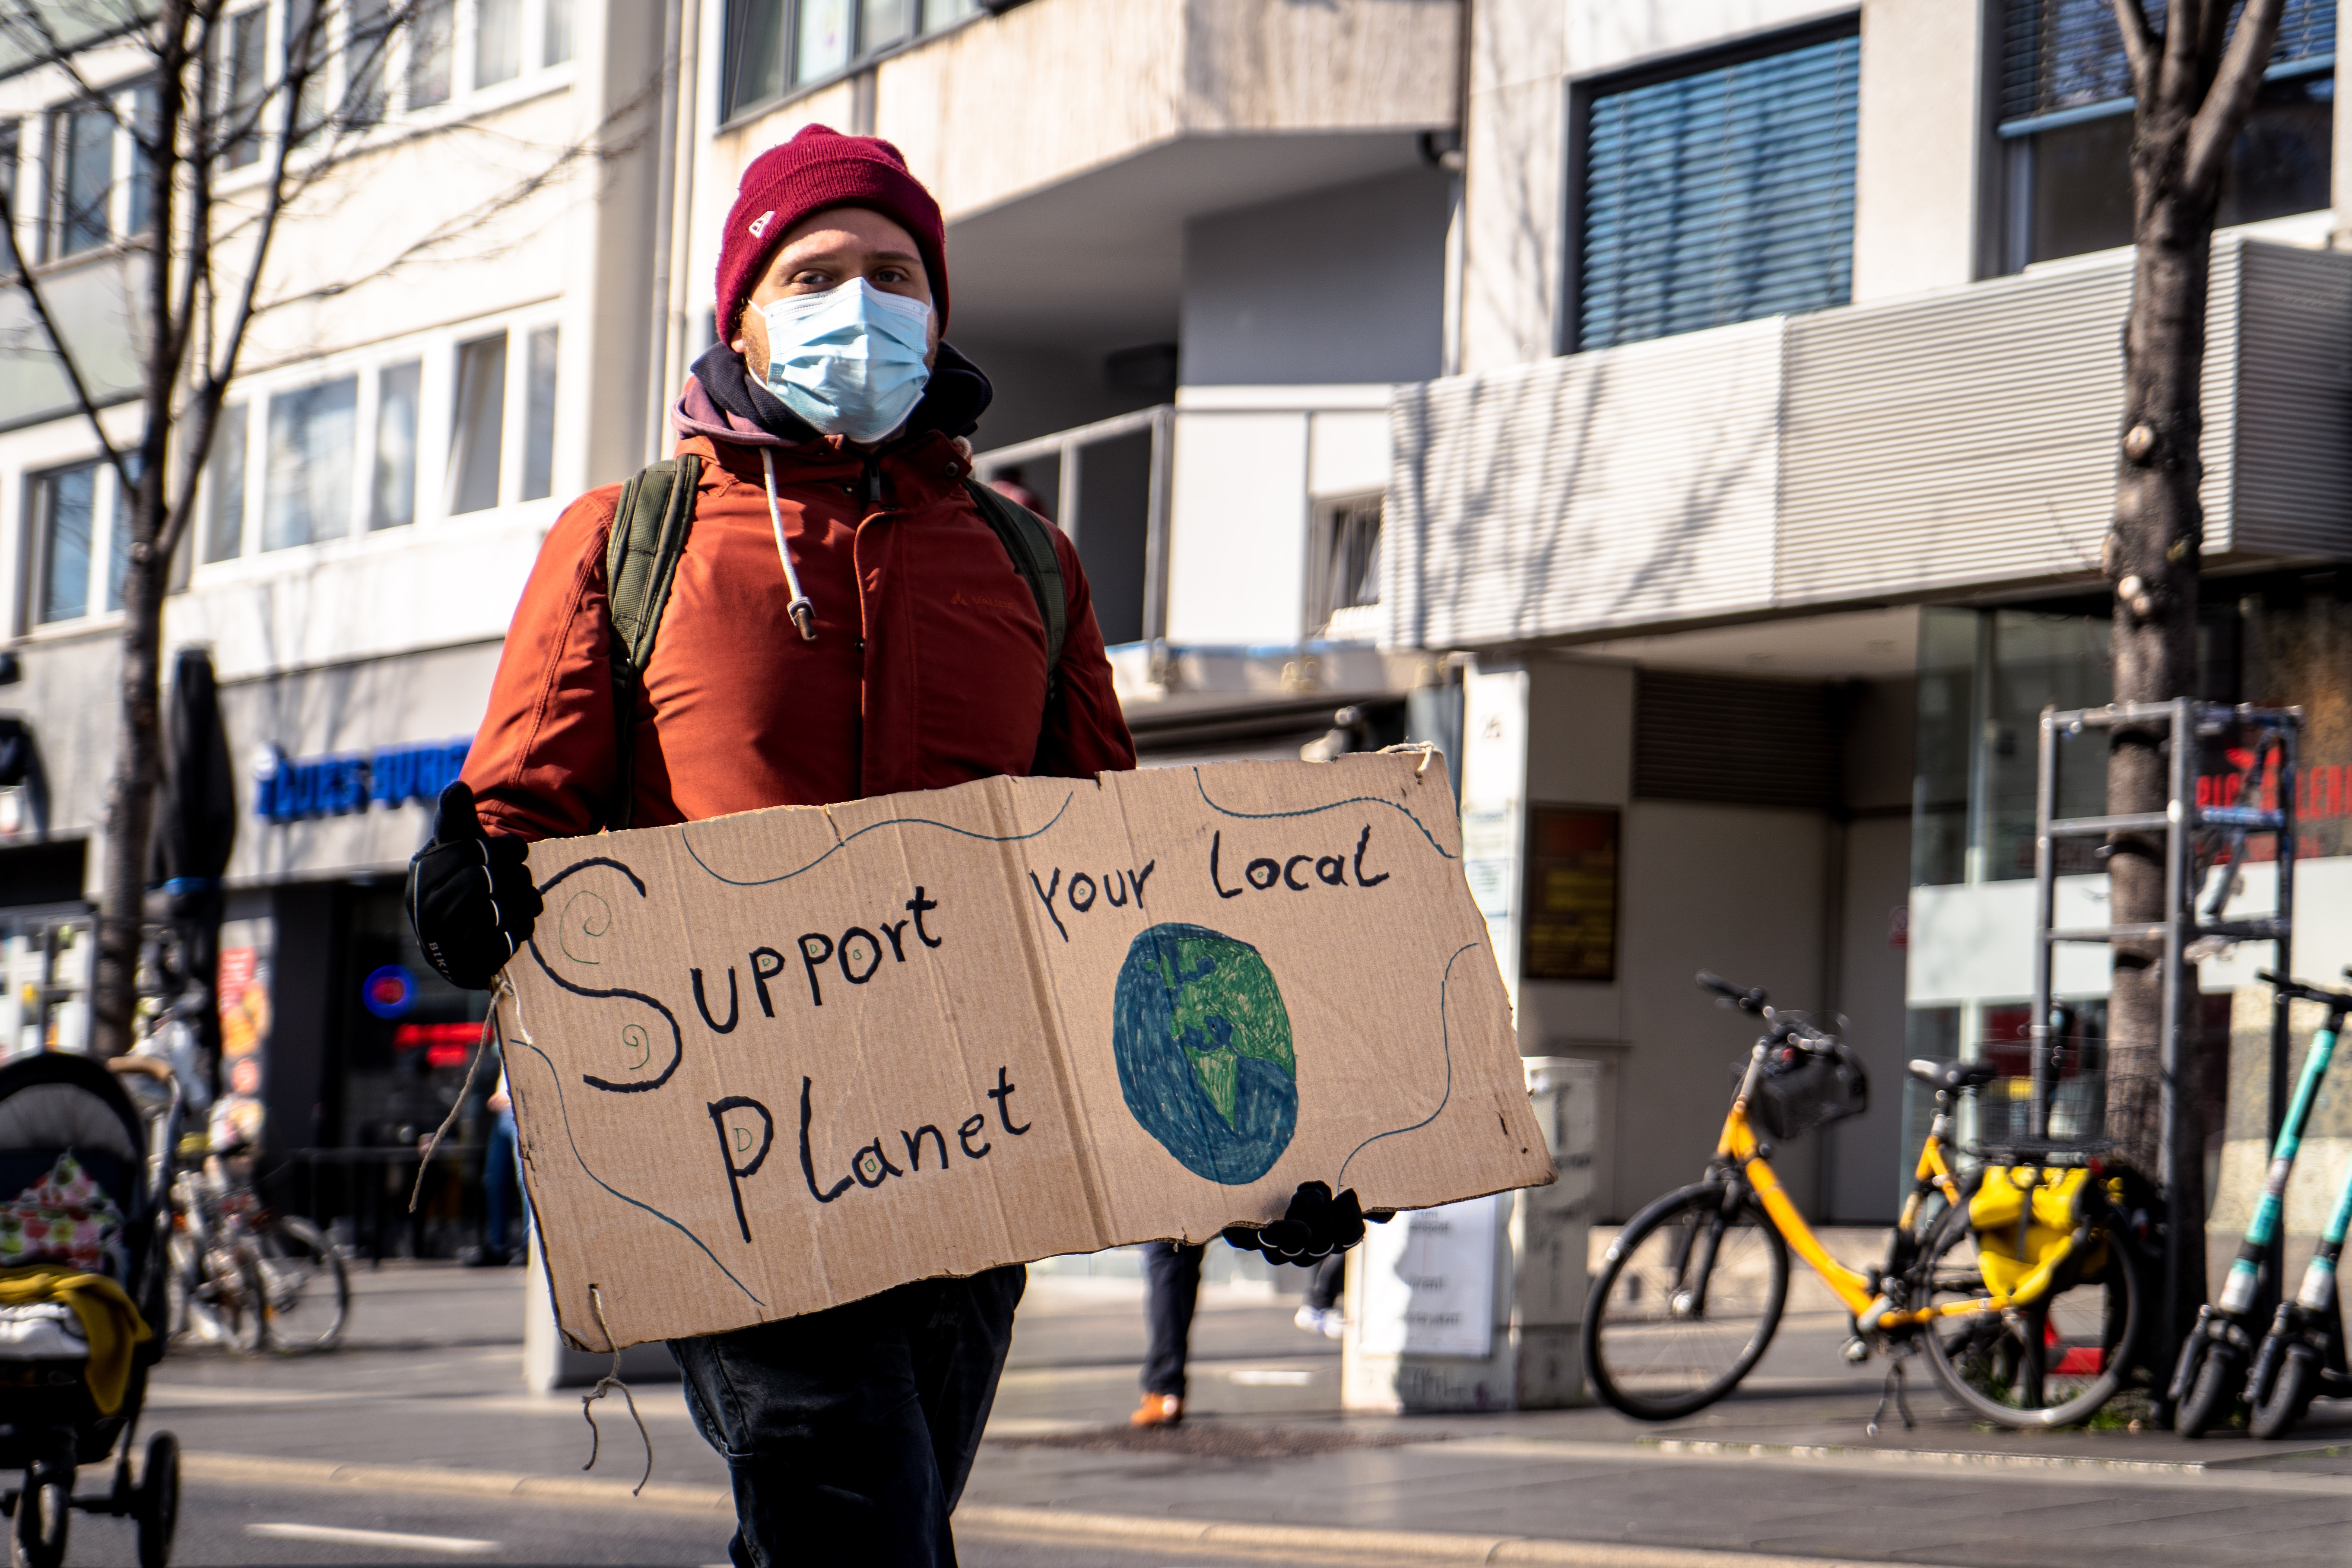 Οικολογικό Άγχος: Η Νο1 αναζήτηση στη Google εξαιτίας της κλιματικής κρίσης